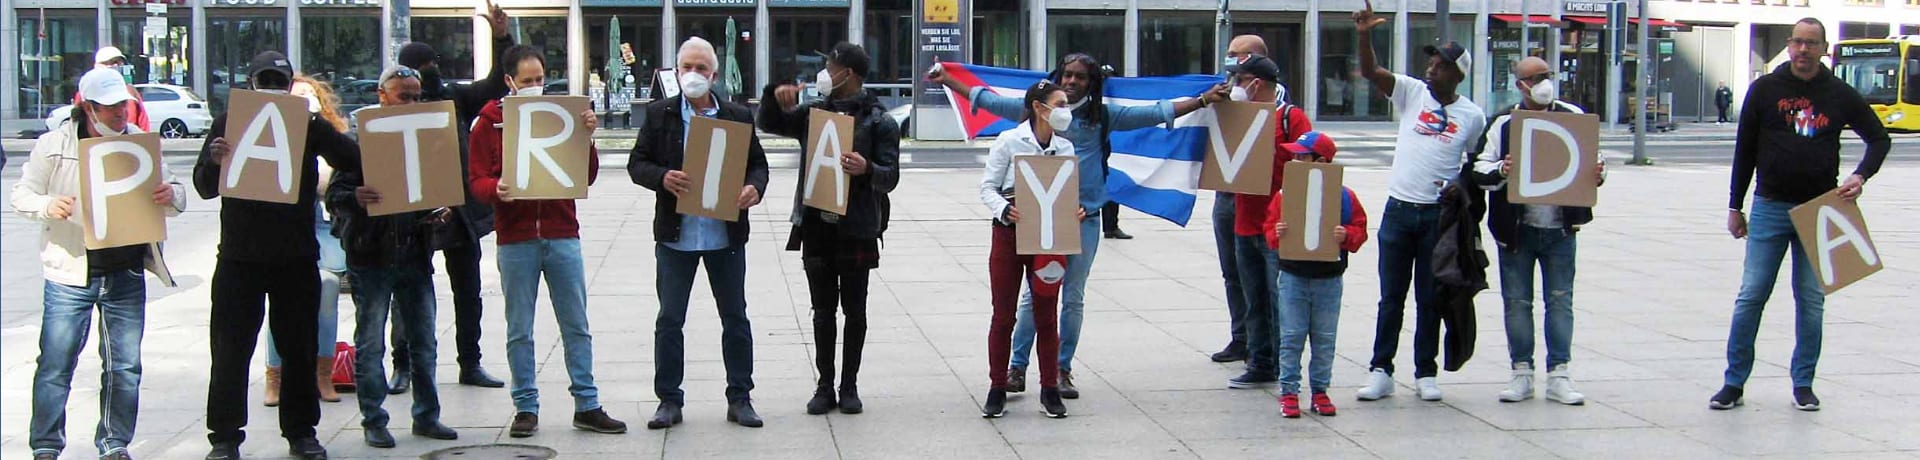 ExilKubaner protestieren in Berlin gegen das kommunistische Regime in ihrer Heimat unter dem Motto: "Freiehti für Kuba"